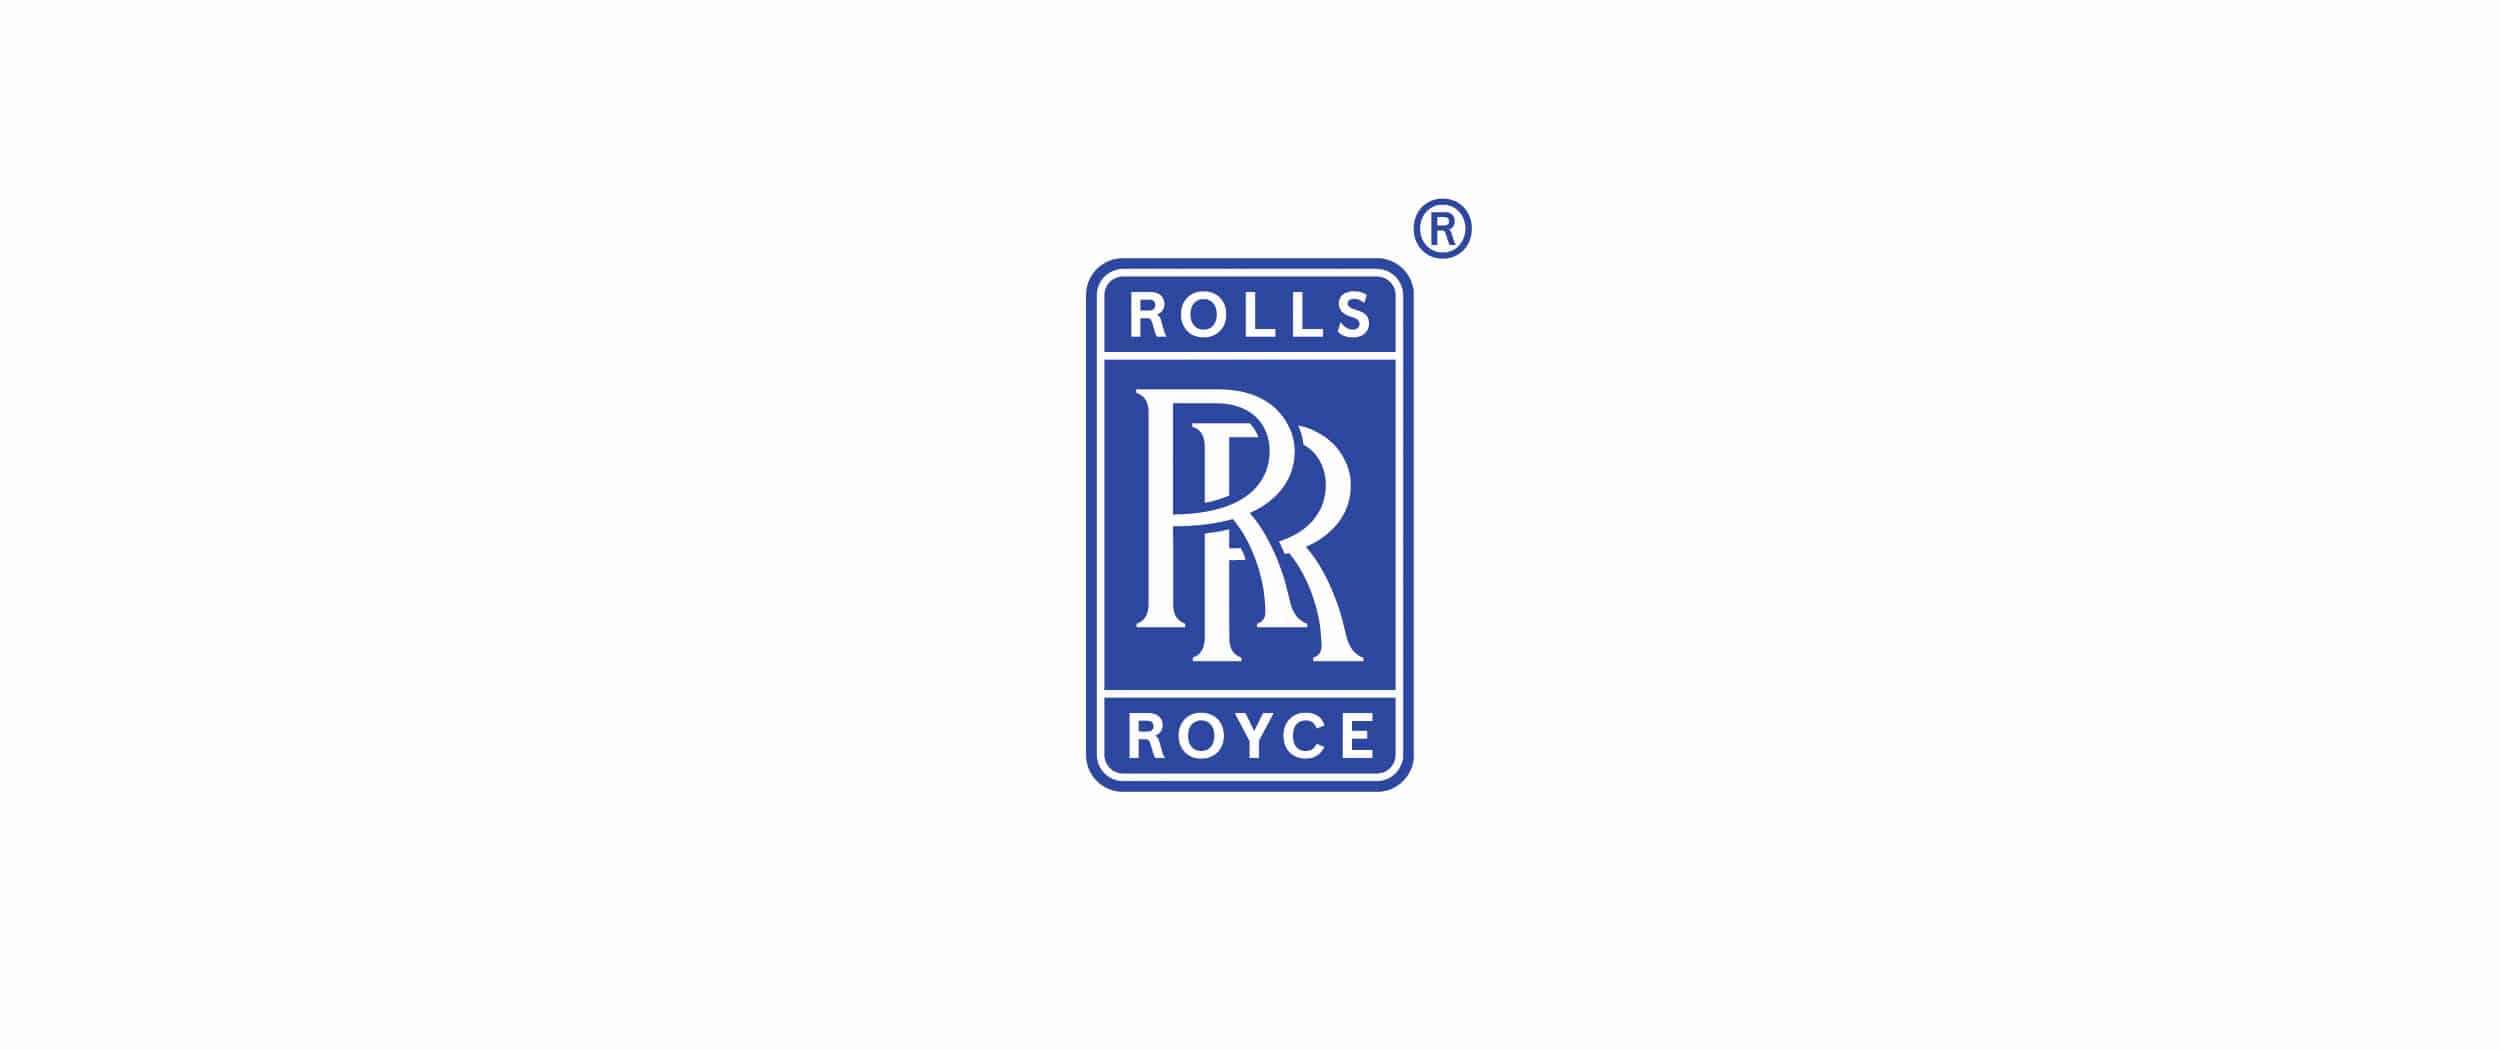 Roll-Royce